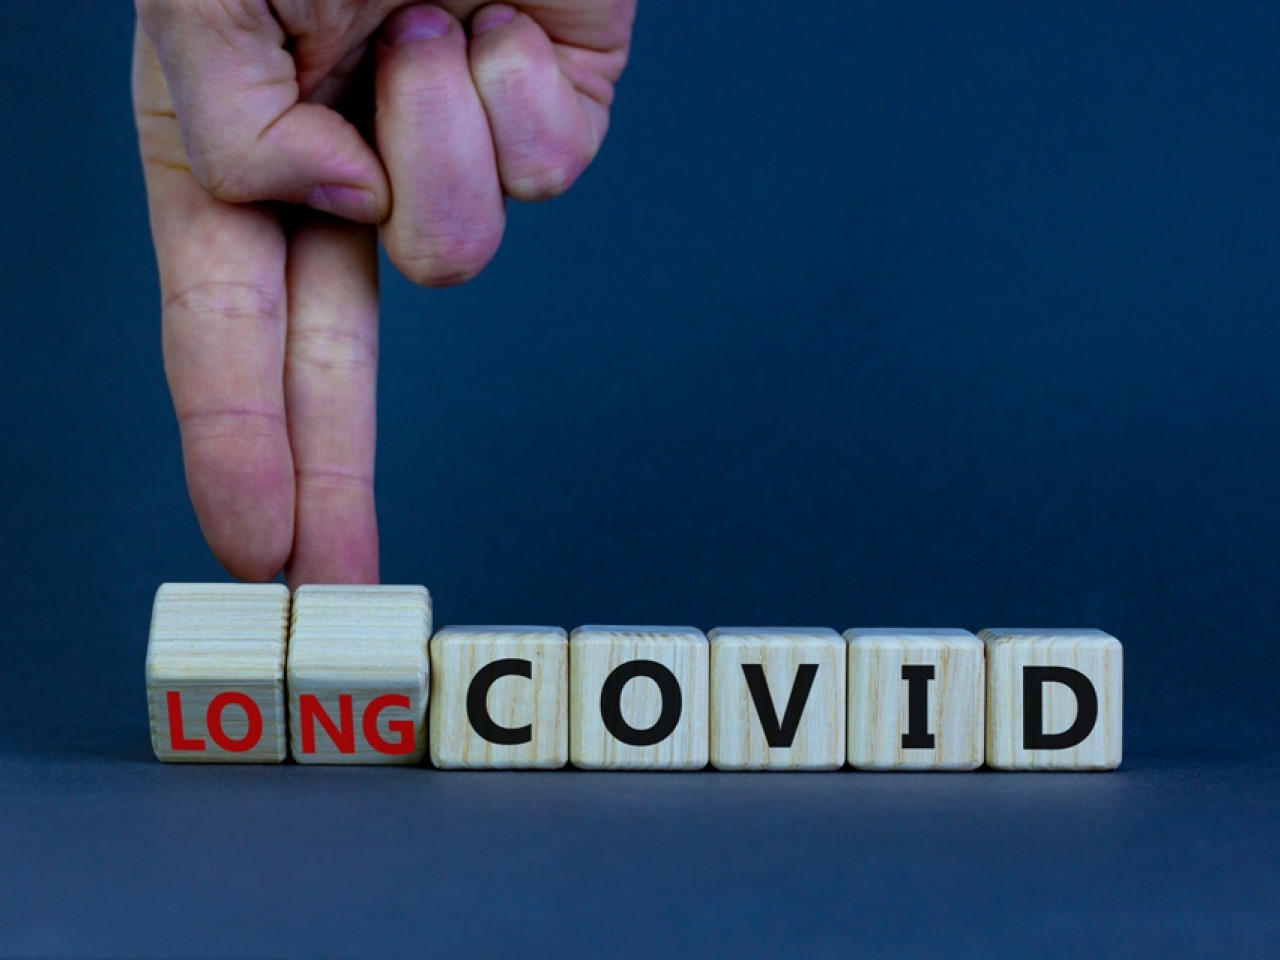 Σχεδόν ο ένας στους πέντε ενηλίκους με COVID παρουσιάζει συμπτώματα διαρκείας